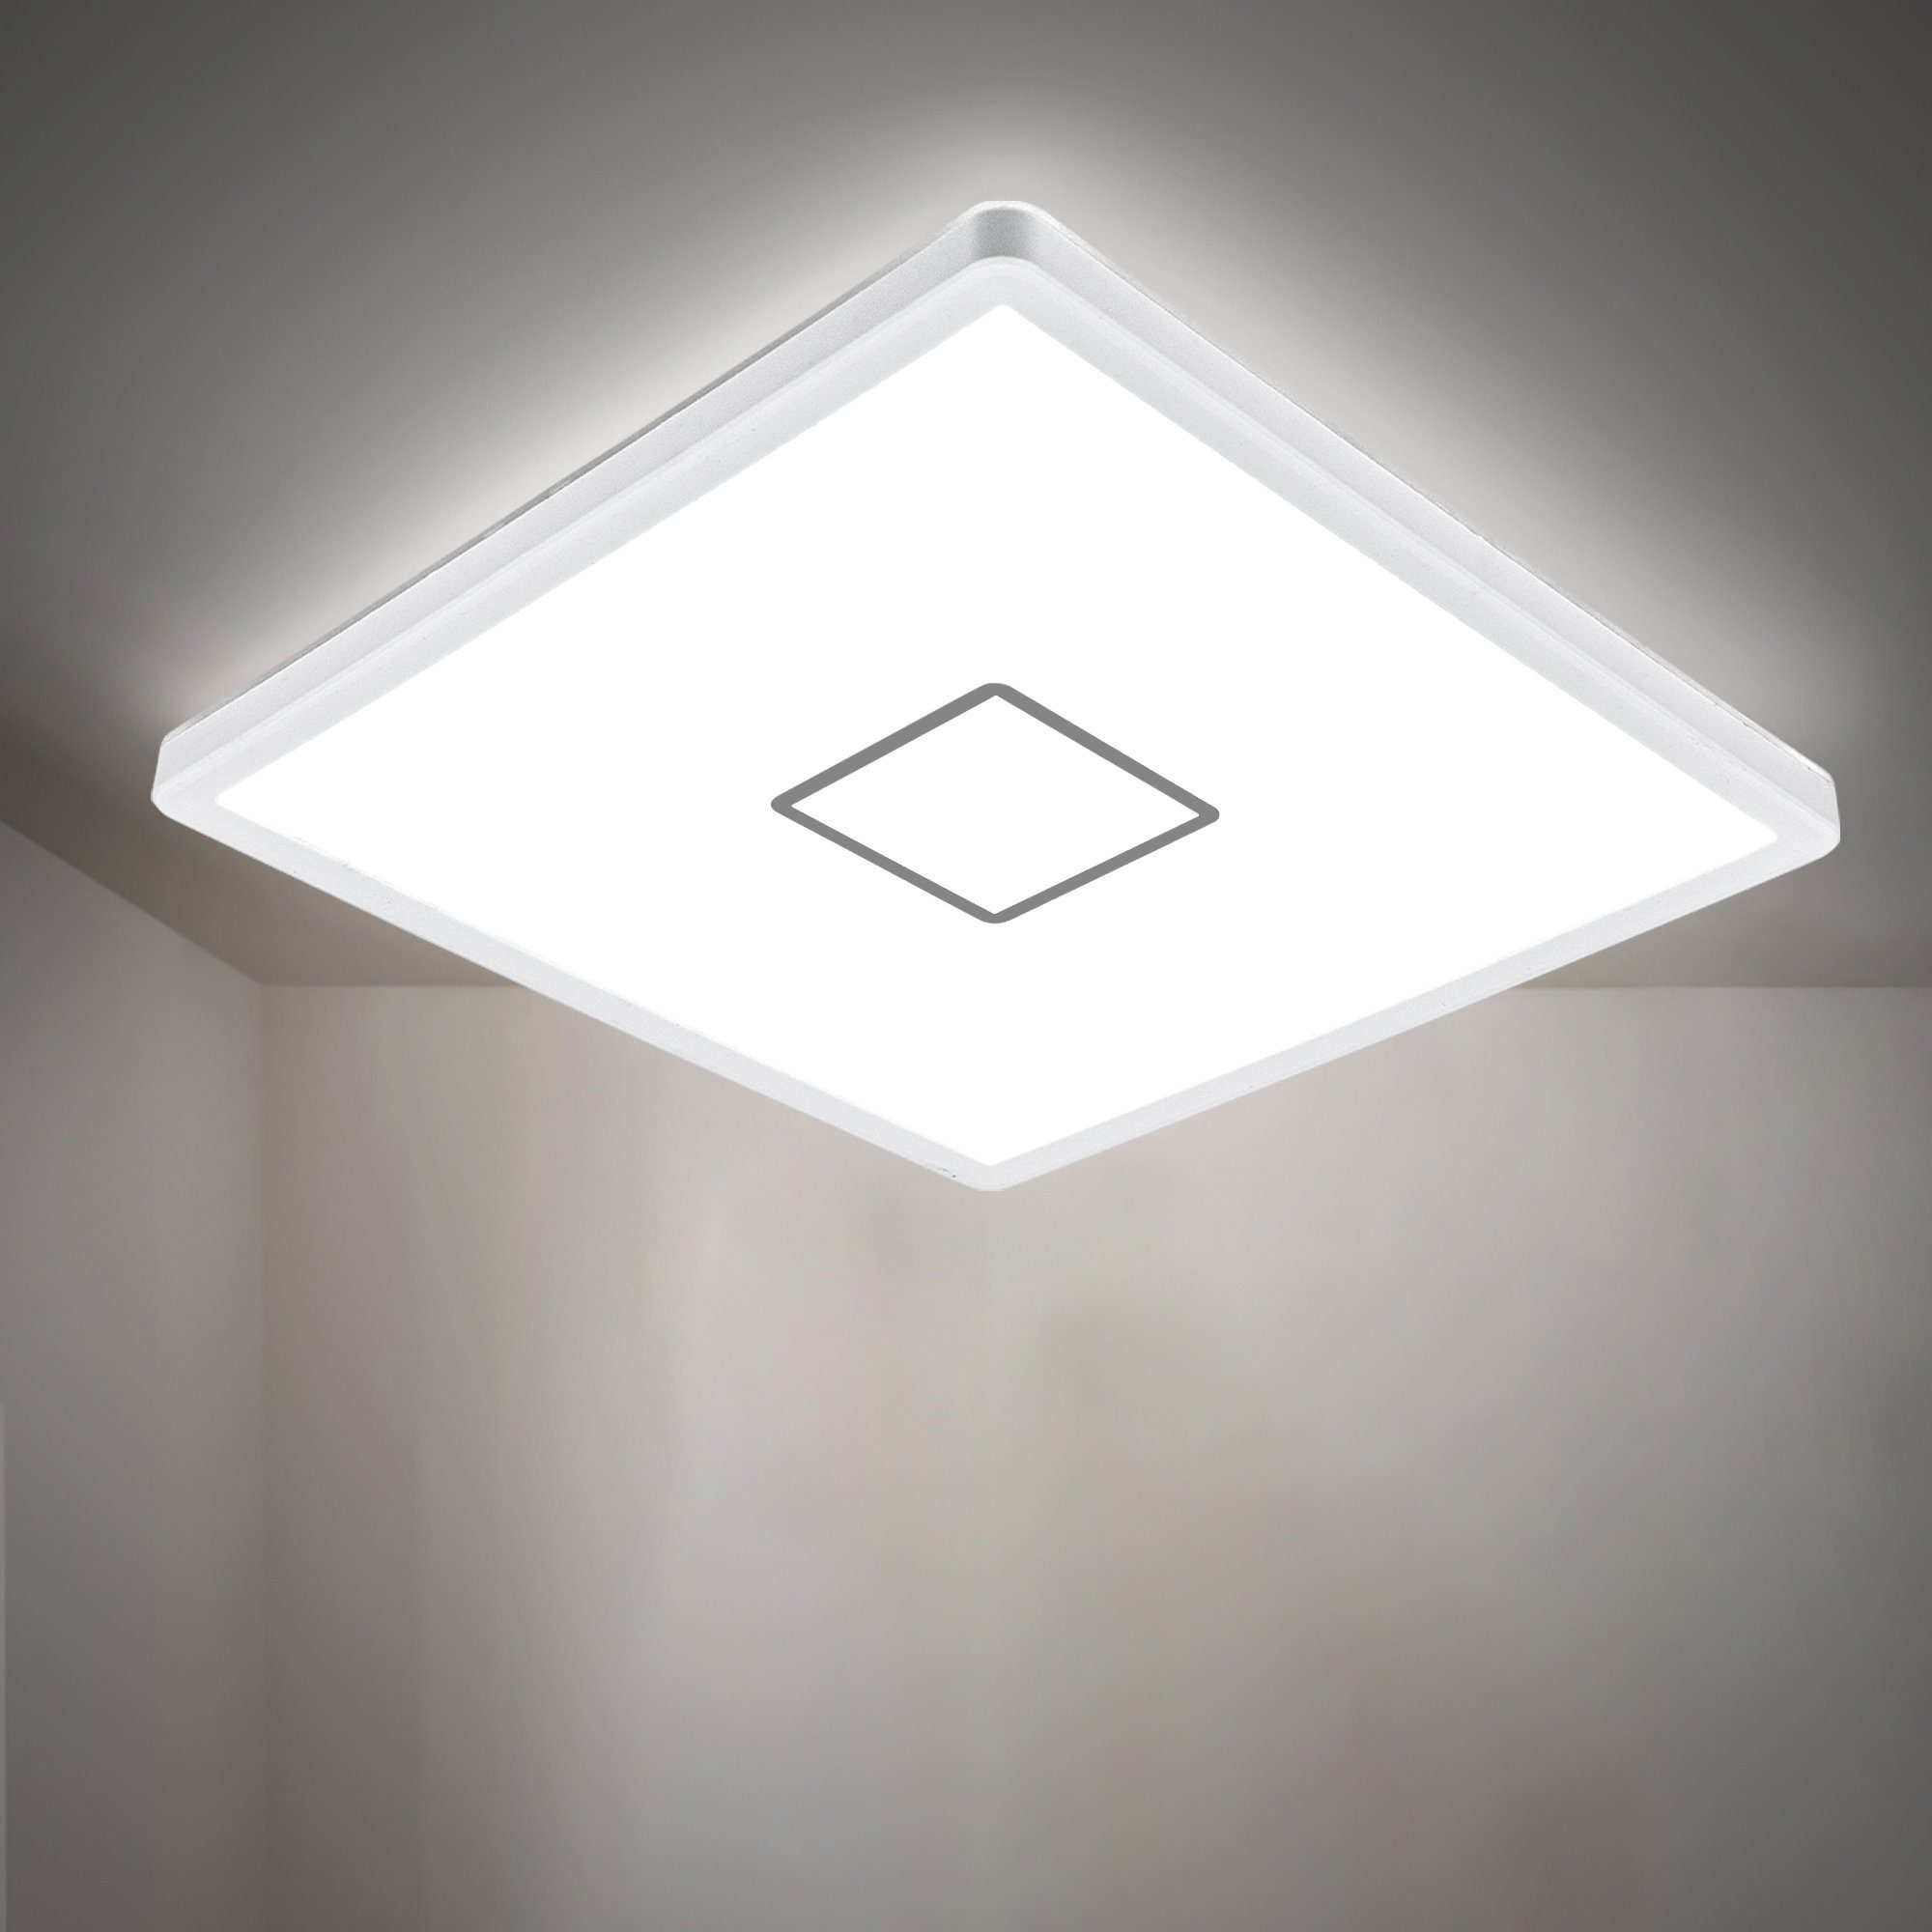 LED Panel Deckenlampe dimmbar ultraflach Deckenleuchte Wohnzimmer Flur weiß 